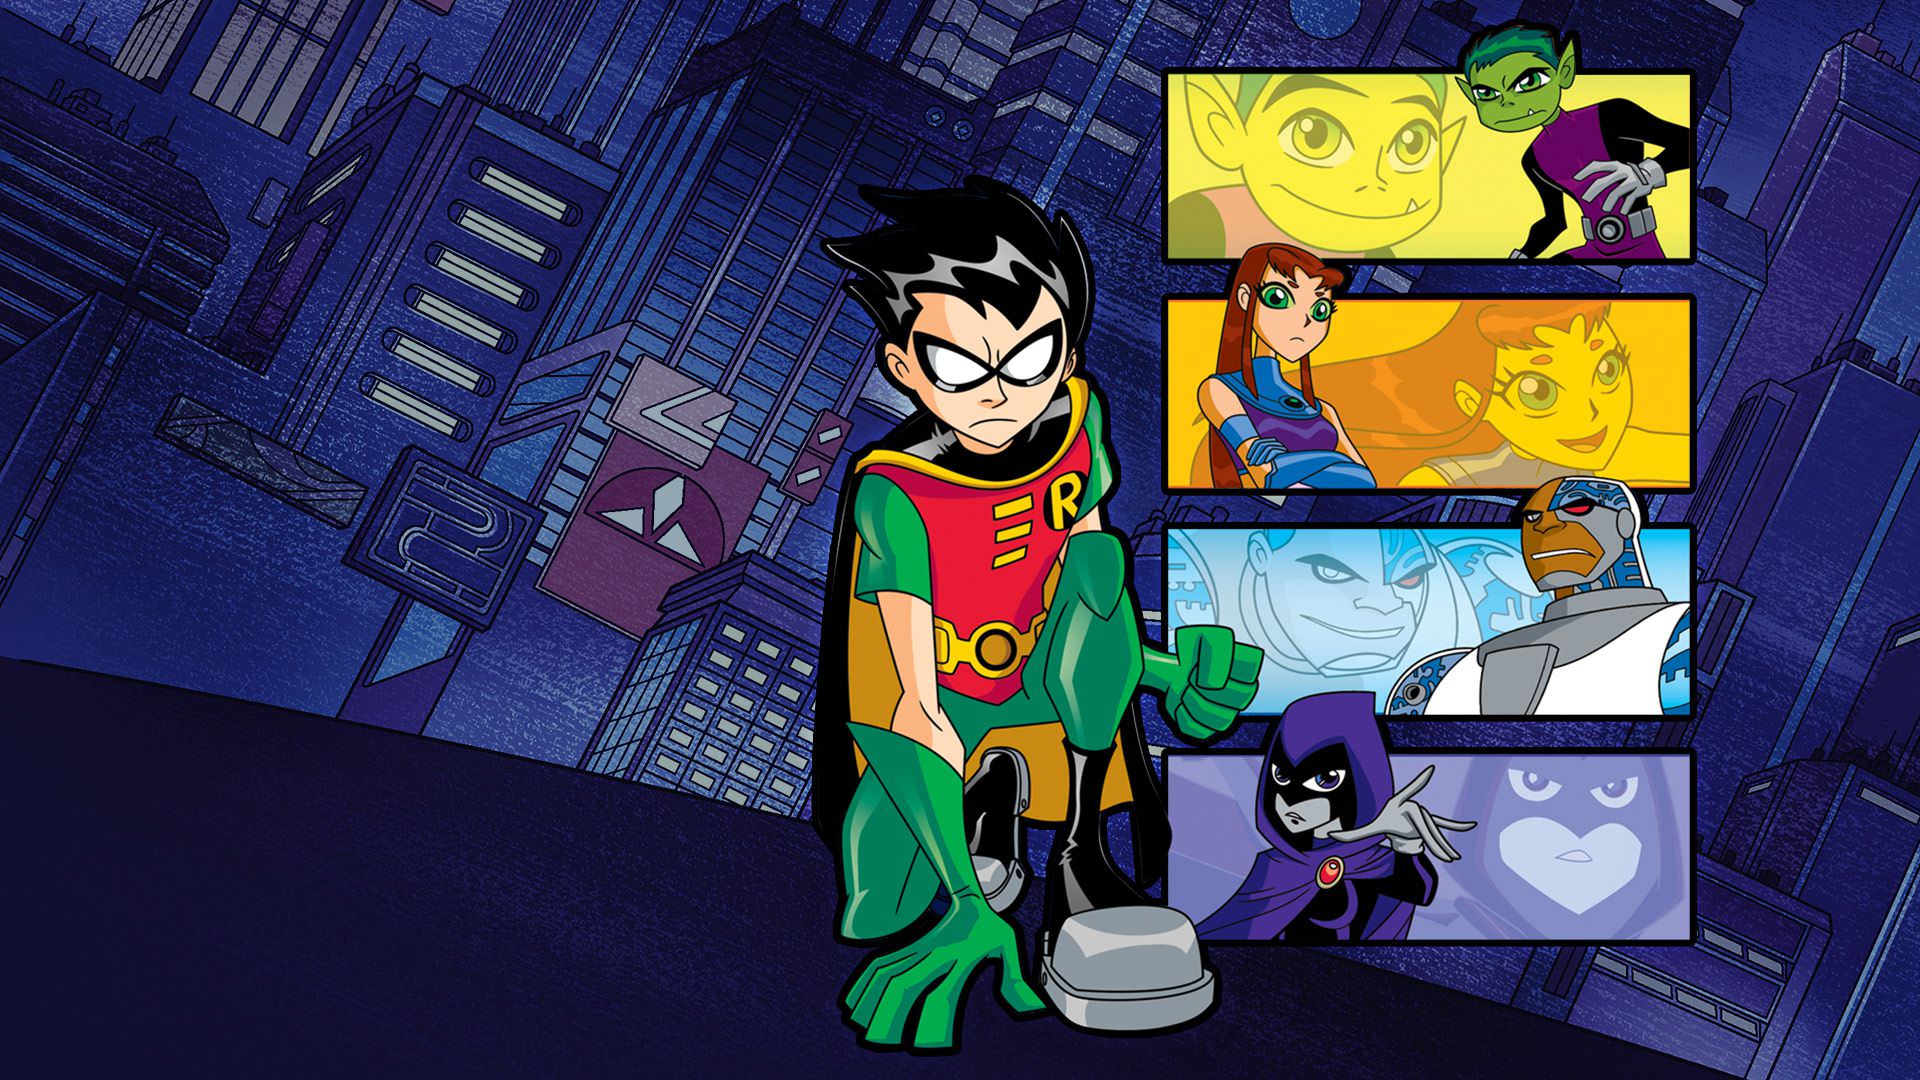 فیلم لایو اکشن Teen Titans از دنیای دی سی در دست ساخت است